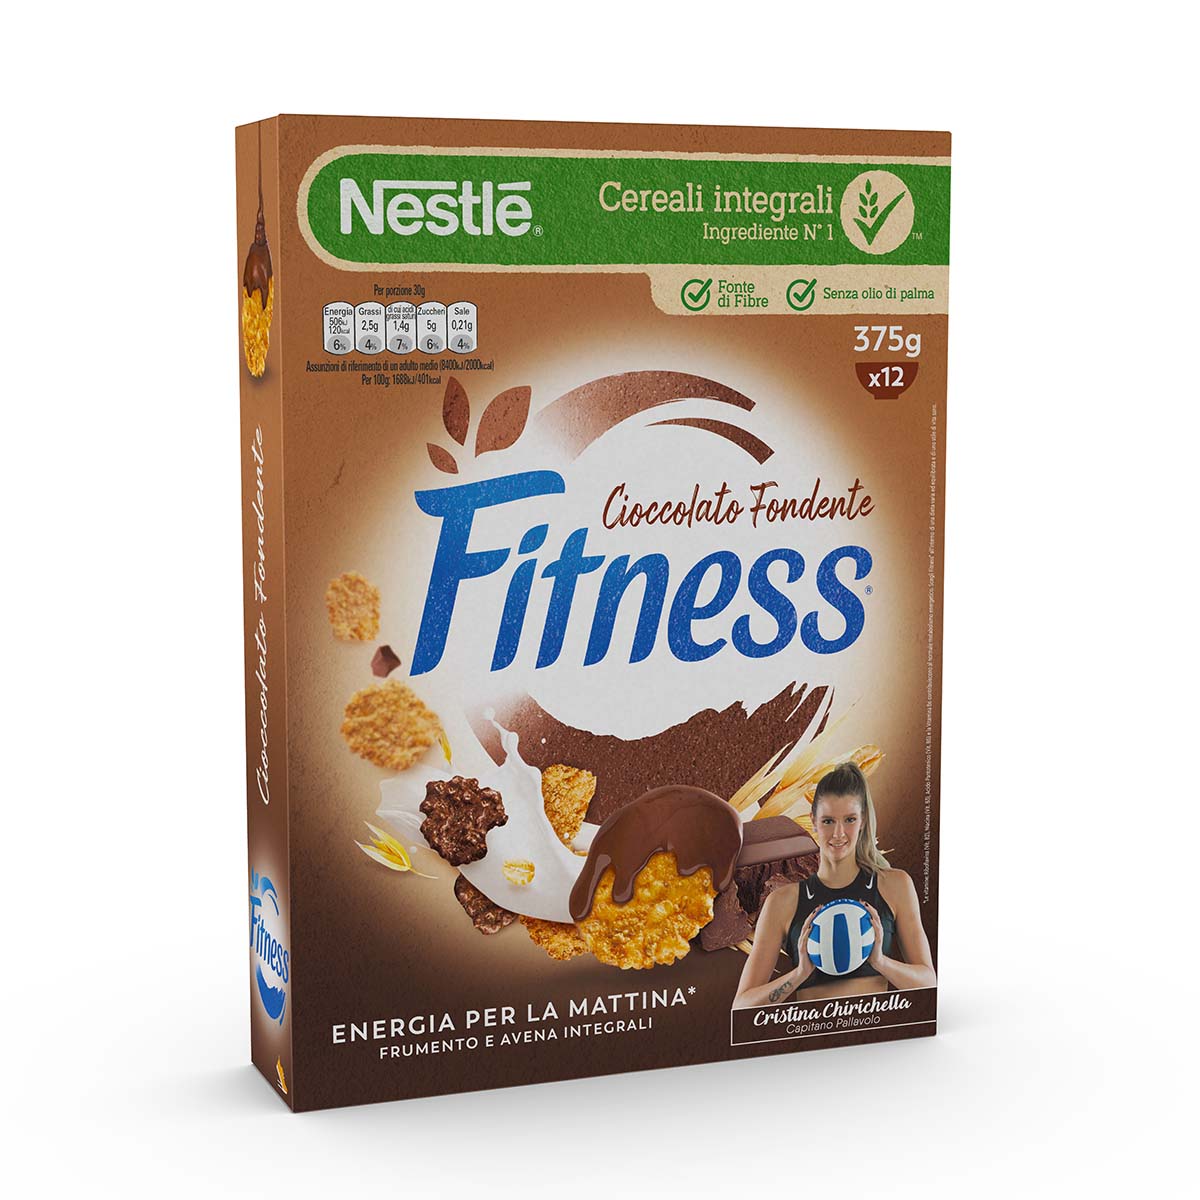 Fitness® CIOCCOLATO FONDENTE Cereali con frumento e avena integrali e fiocchi ricoperti al cioccolato fondente 375g